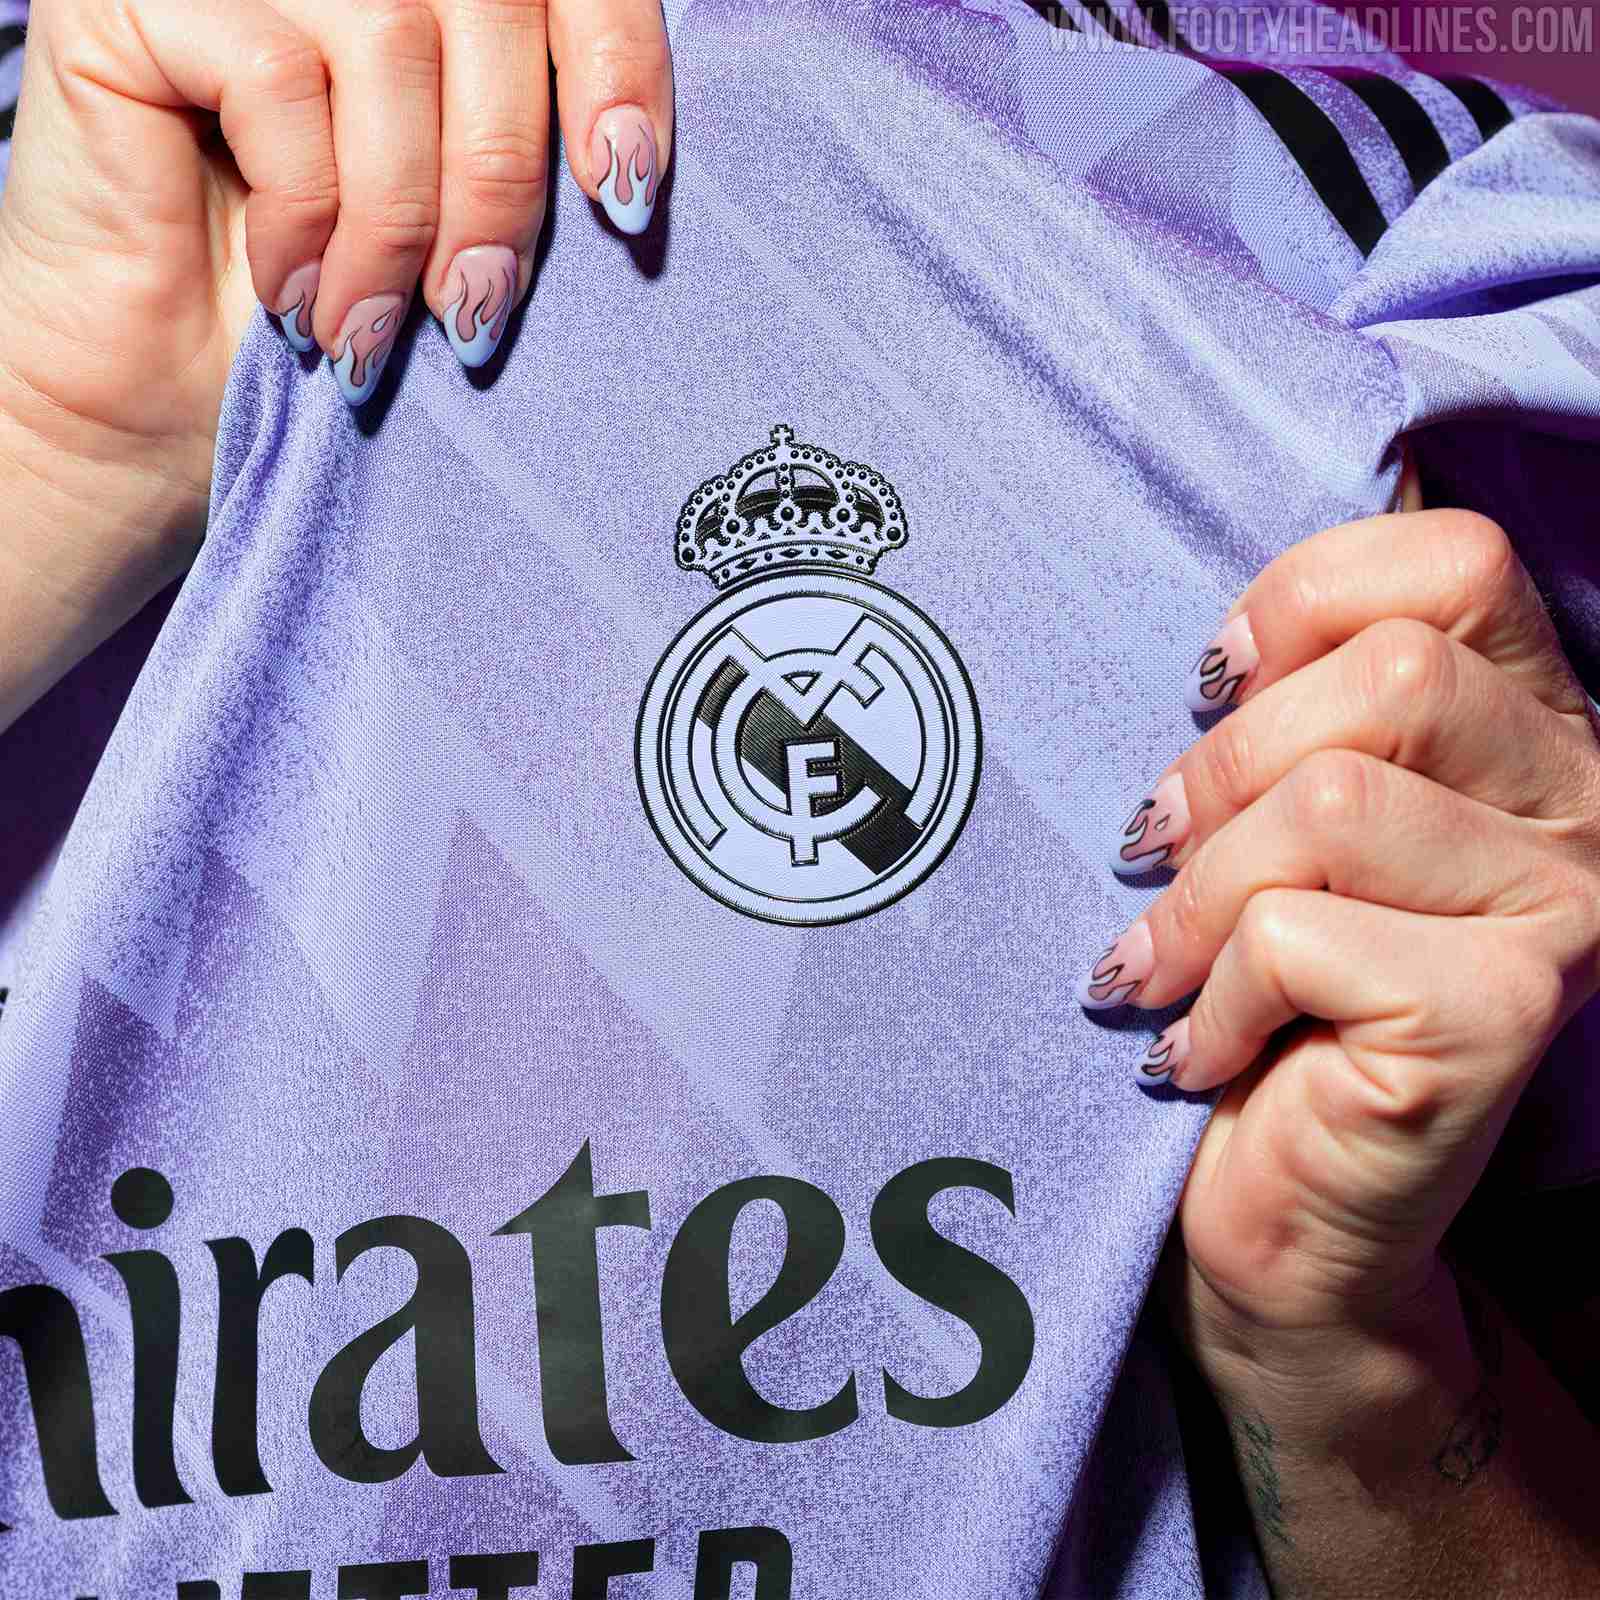 kleuring ik ben ziek omverwerping Real Madrid 22-23 Away Kit Released - Footy Headlines